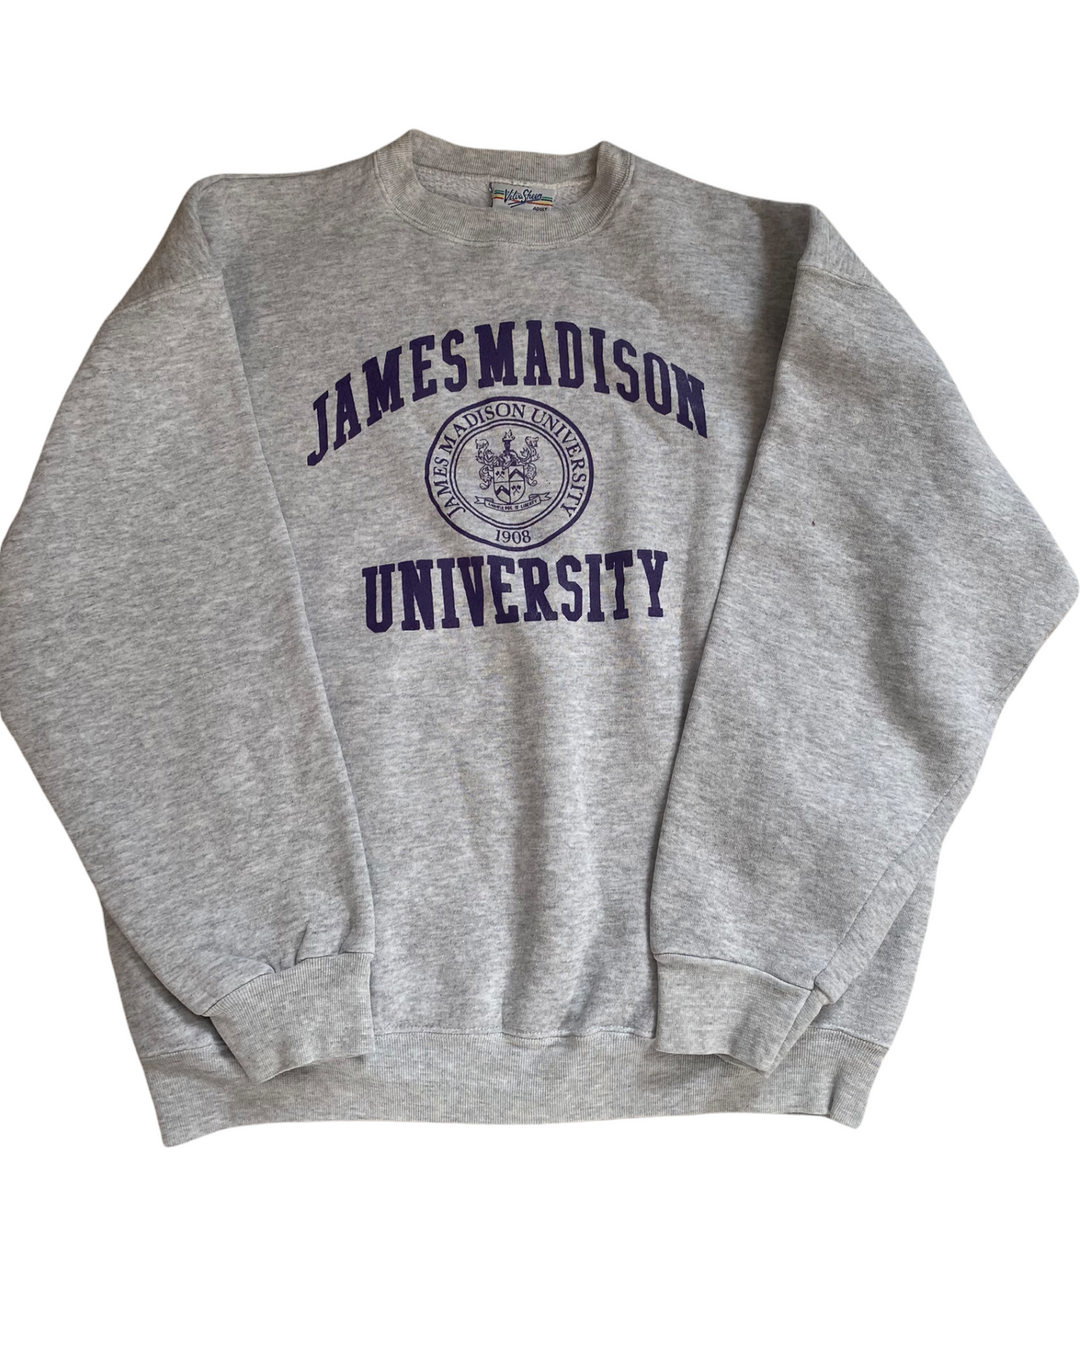 JMU Vintage Vintage Sweatshirt